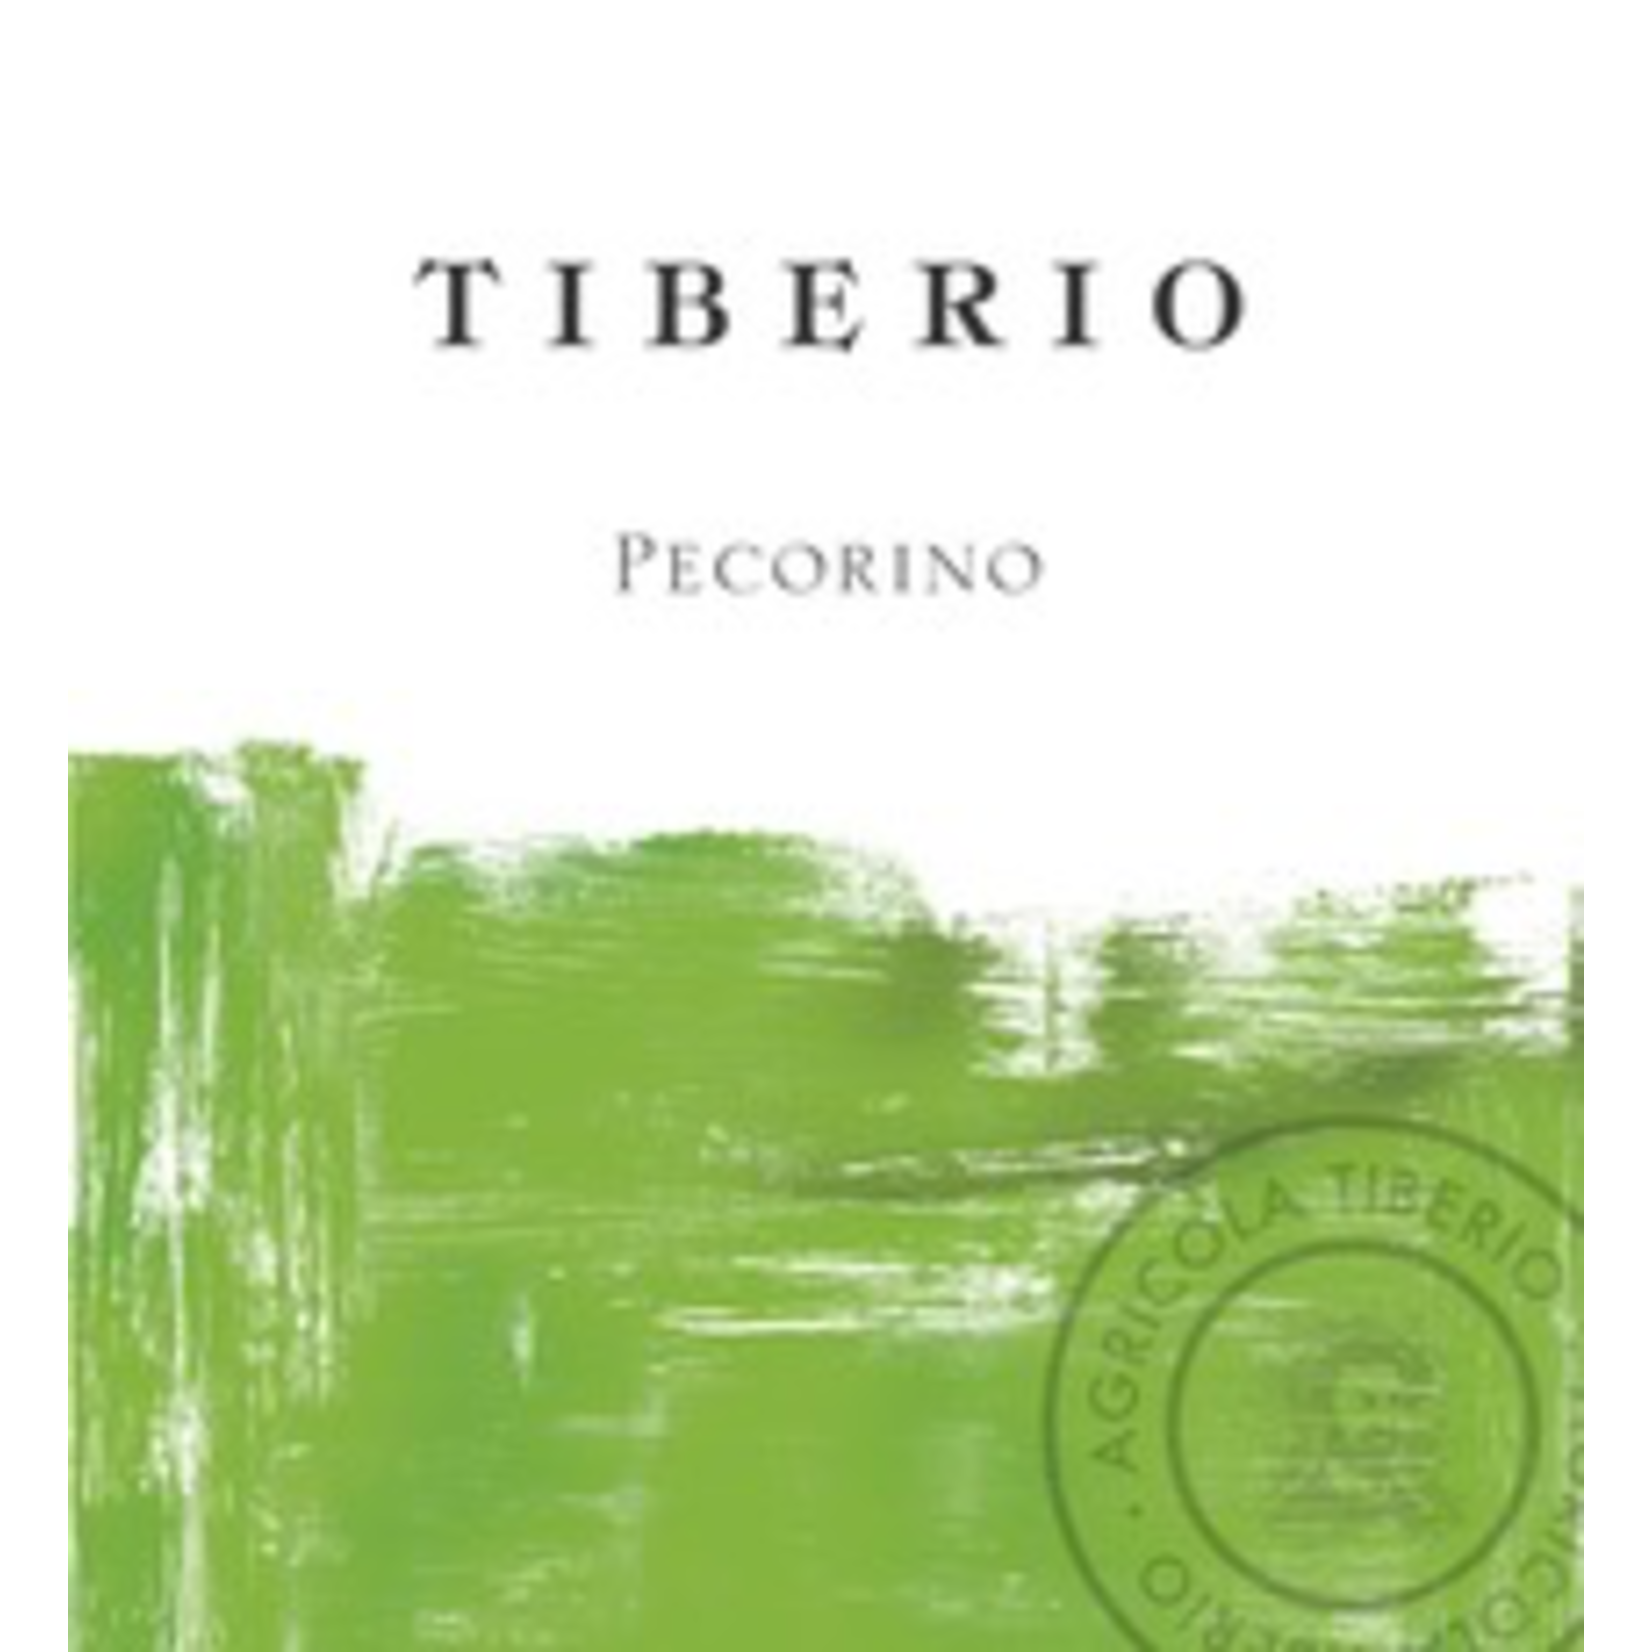 Wine Tiberio Pecorino Colline Pescaresi 2021